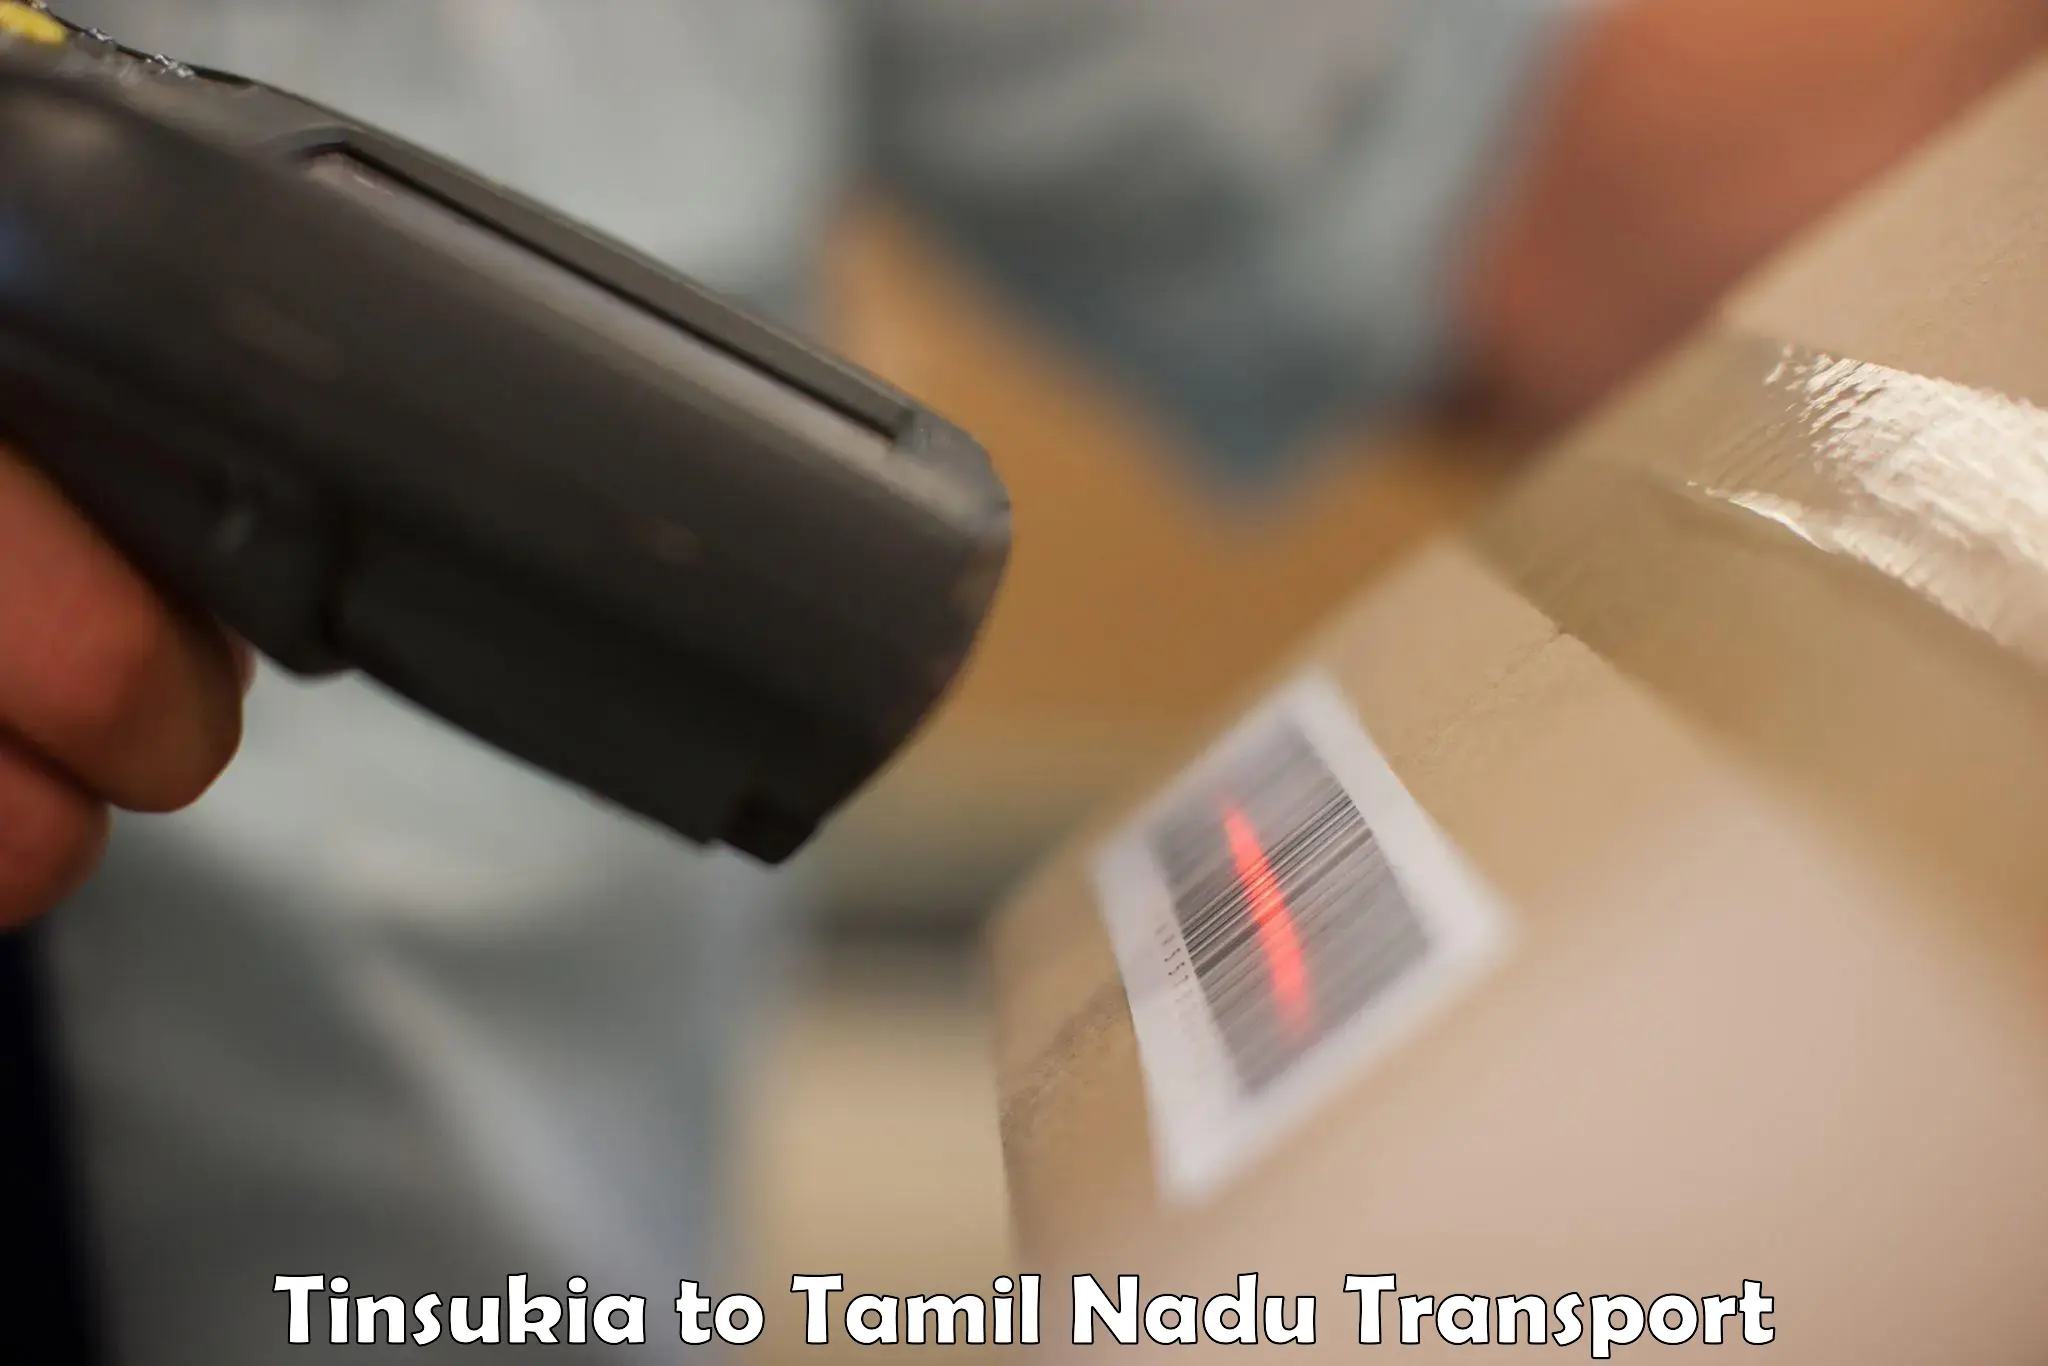 International cargo transportation services Tinsukia to Ennore Port Chennai